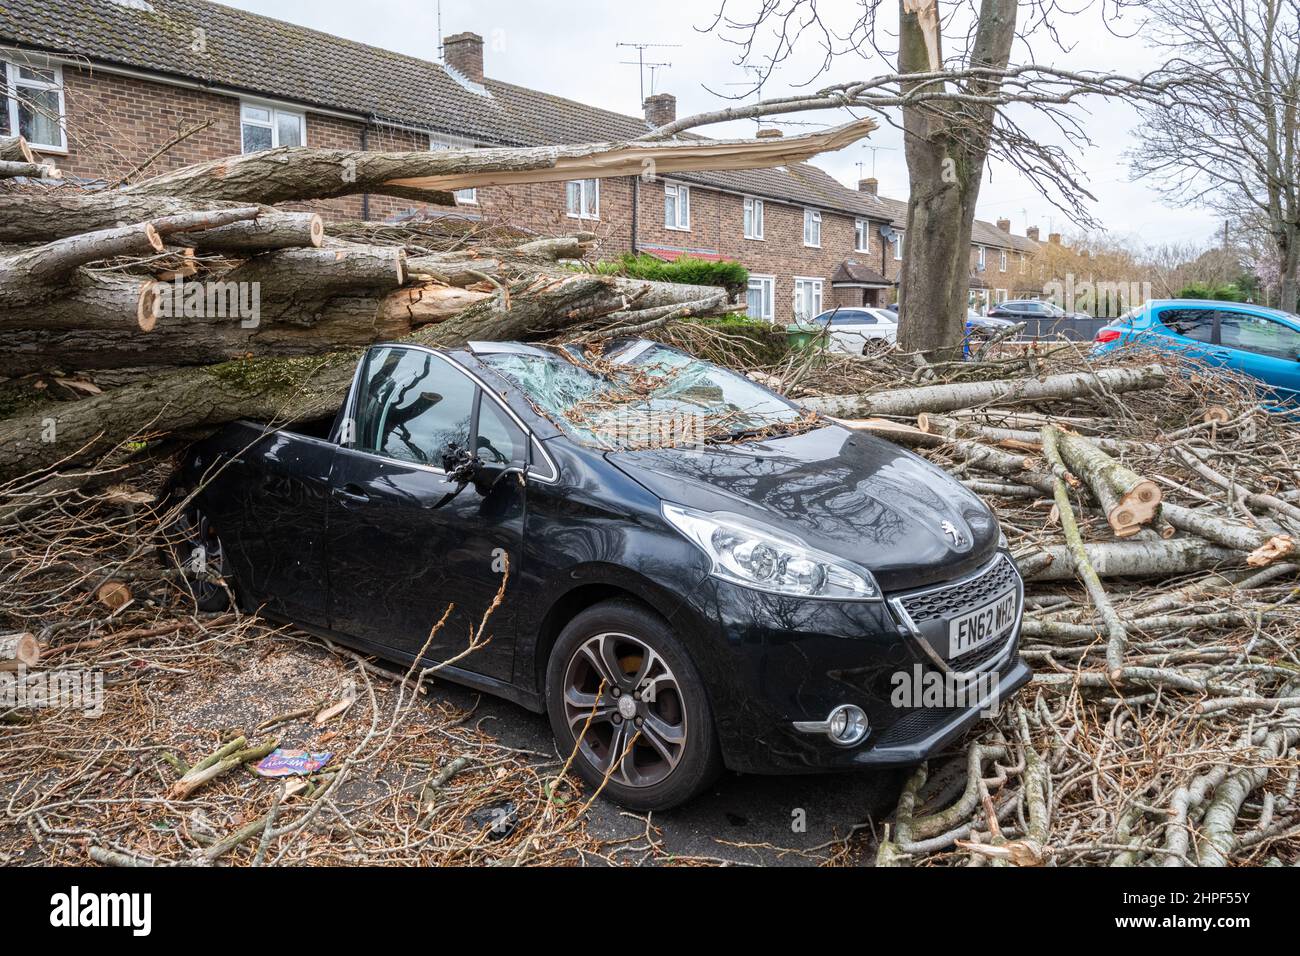 2022. Februar, Schaden Durch Sturm Eunice. Ein Auto, das vor den Häusern geparkt wurde, wurde während des Sturms Eunice in Marrowbrook Lane, Farnborough, Hampshire, England, Großbritannien, von einem großen umgestürzten Baum zerschlagen. Die höchste jemals in England gesehene windgeschwindigkeit von 122 mph wurde während des Sturms aufgezeichnet, der am 18th. Februar 2022 auftrat, einer von drei genannten Stürmen in 5 Tagen. Extremes Wetter ist mit der Klimakrise verbunden. Stockfoto